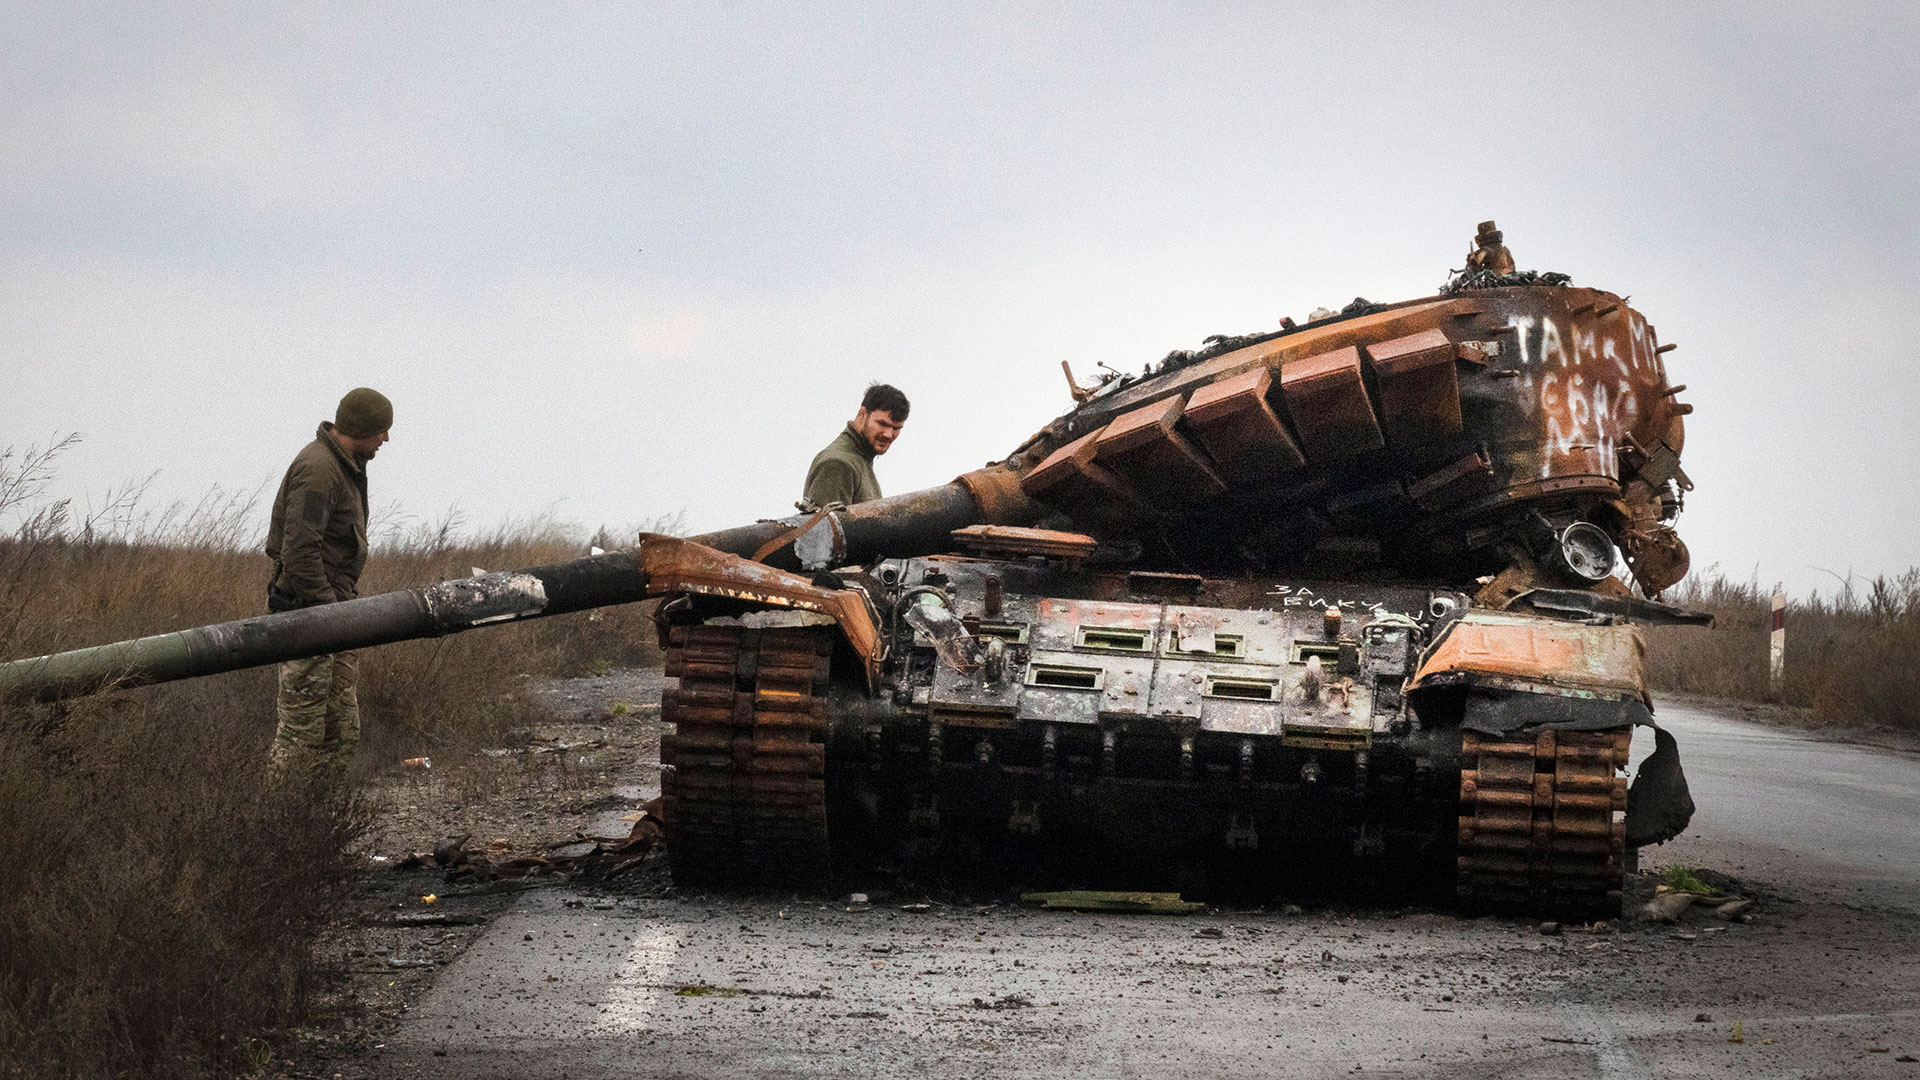 Soldados ucranianos inspeccionan un tanque ruso dañado en una carretera cerca de la aldea recientemente recuperada de Kamianka, región de Kharkiv, Ucrania, el domingo 30 de octubre de 2022. (Foto AP/Efrem Lukatsky)

